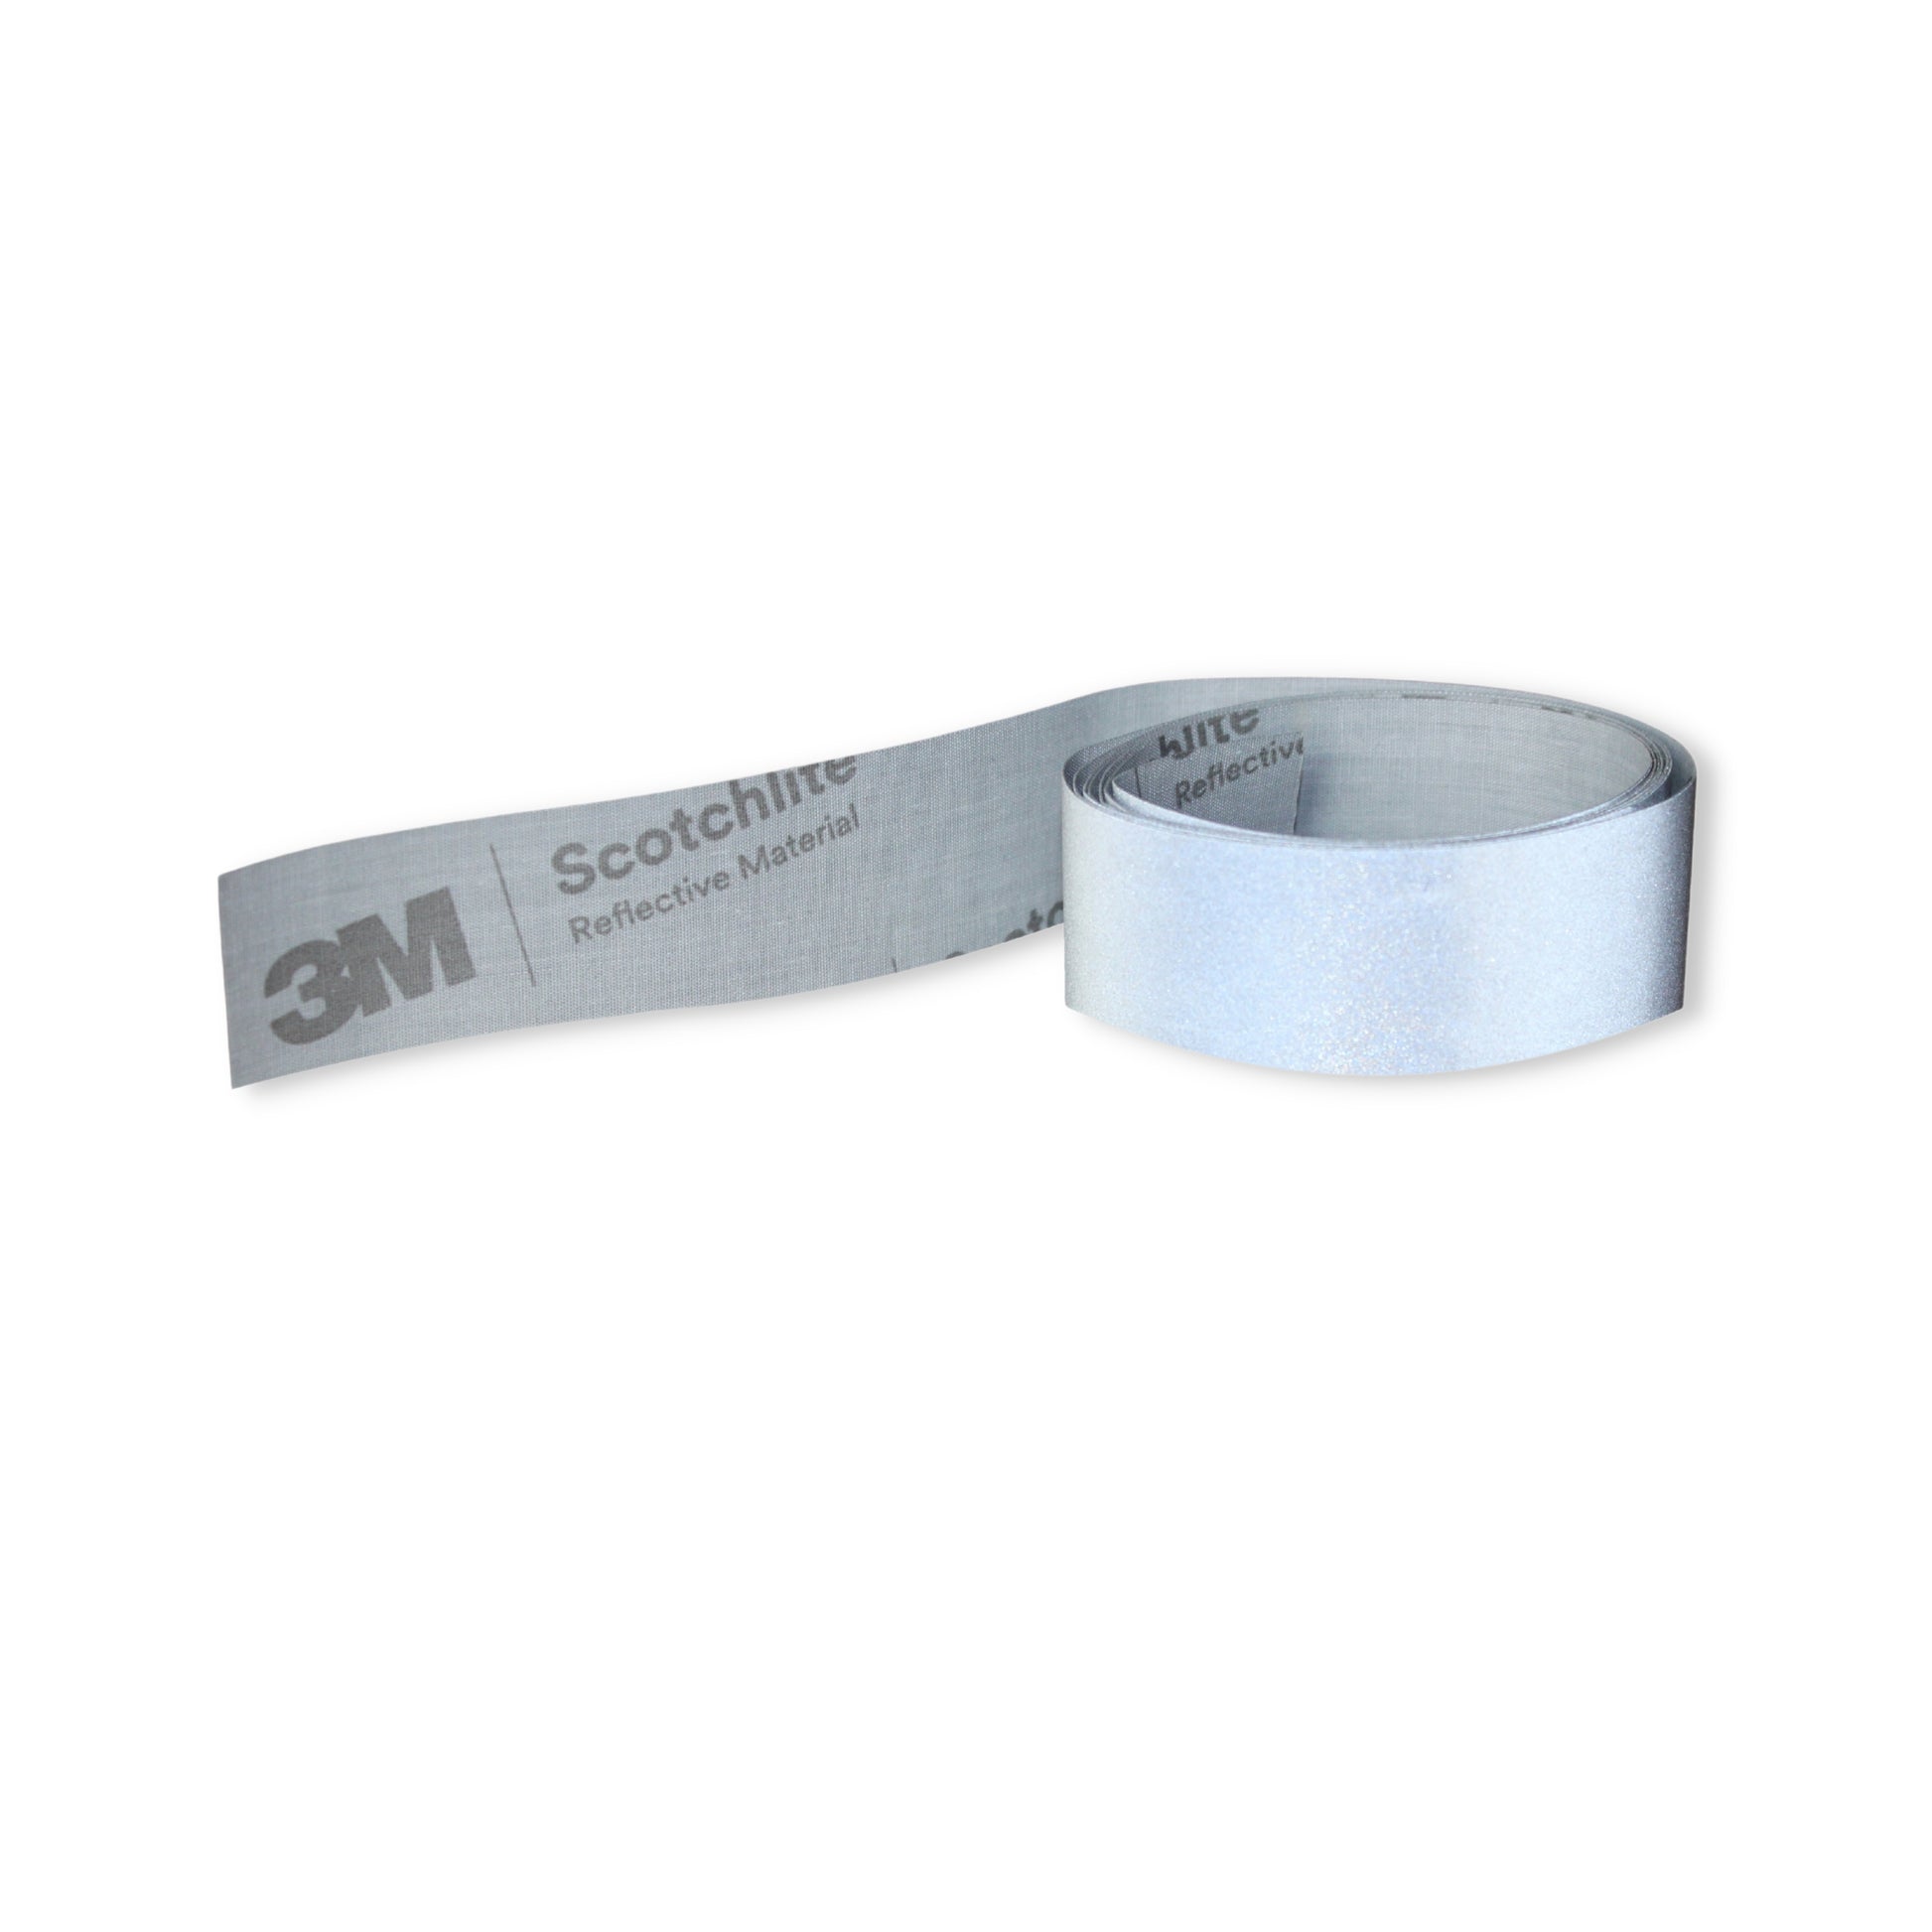 Reflektorband Silber 5cm